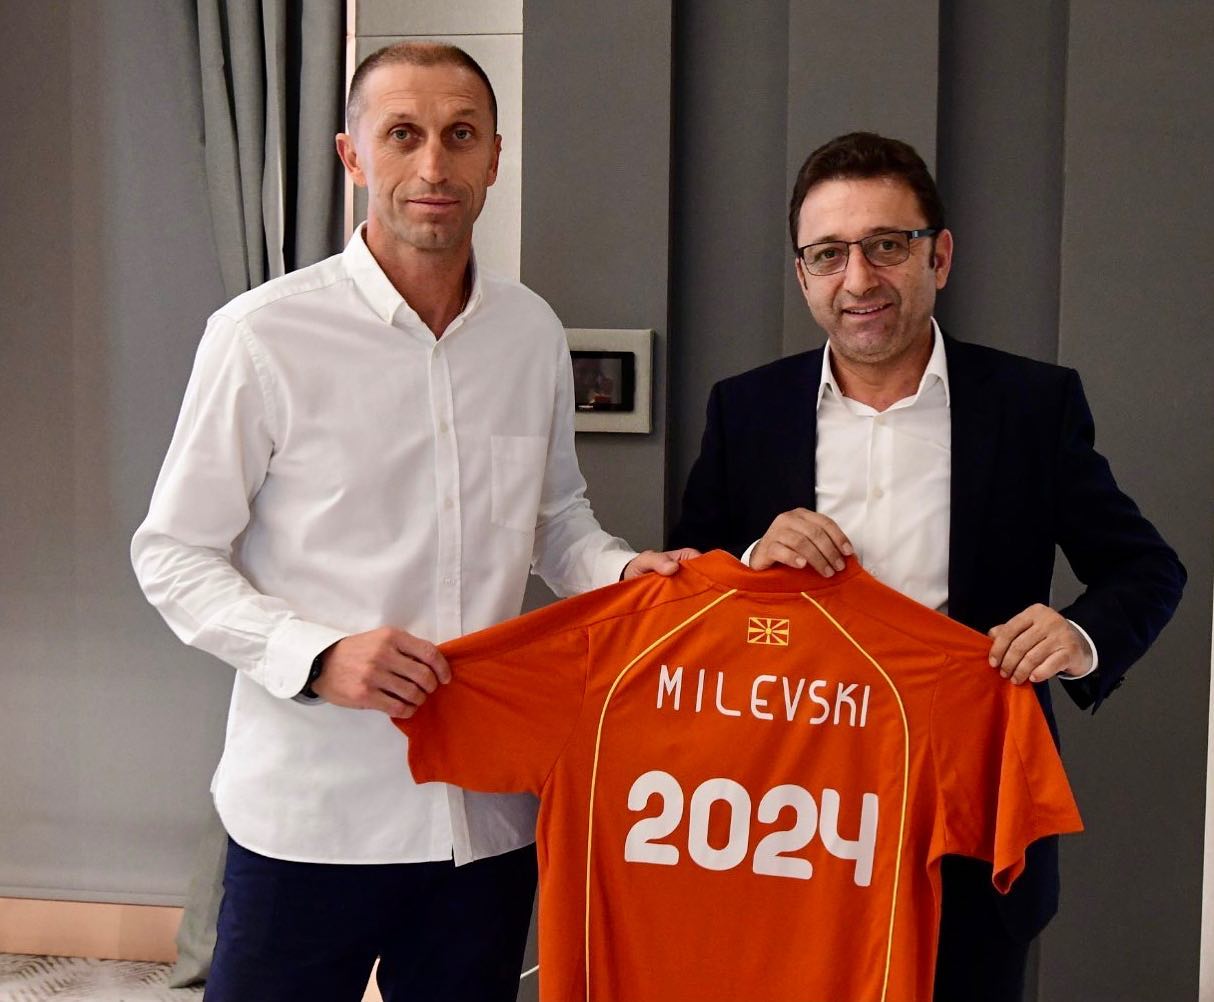 K. Makedonya A Milli Futbol Takımı’nın yeni antrenörü Milevski oldu